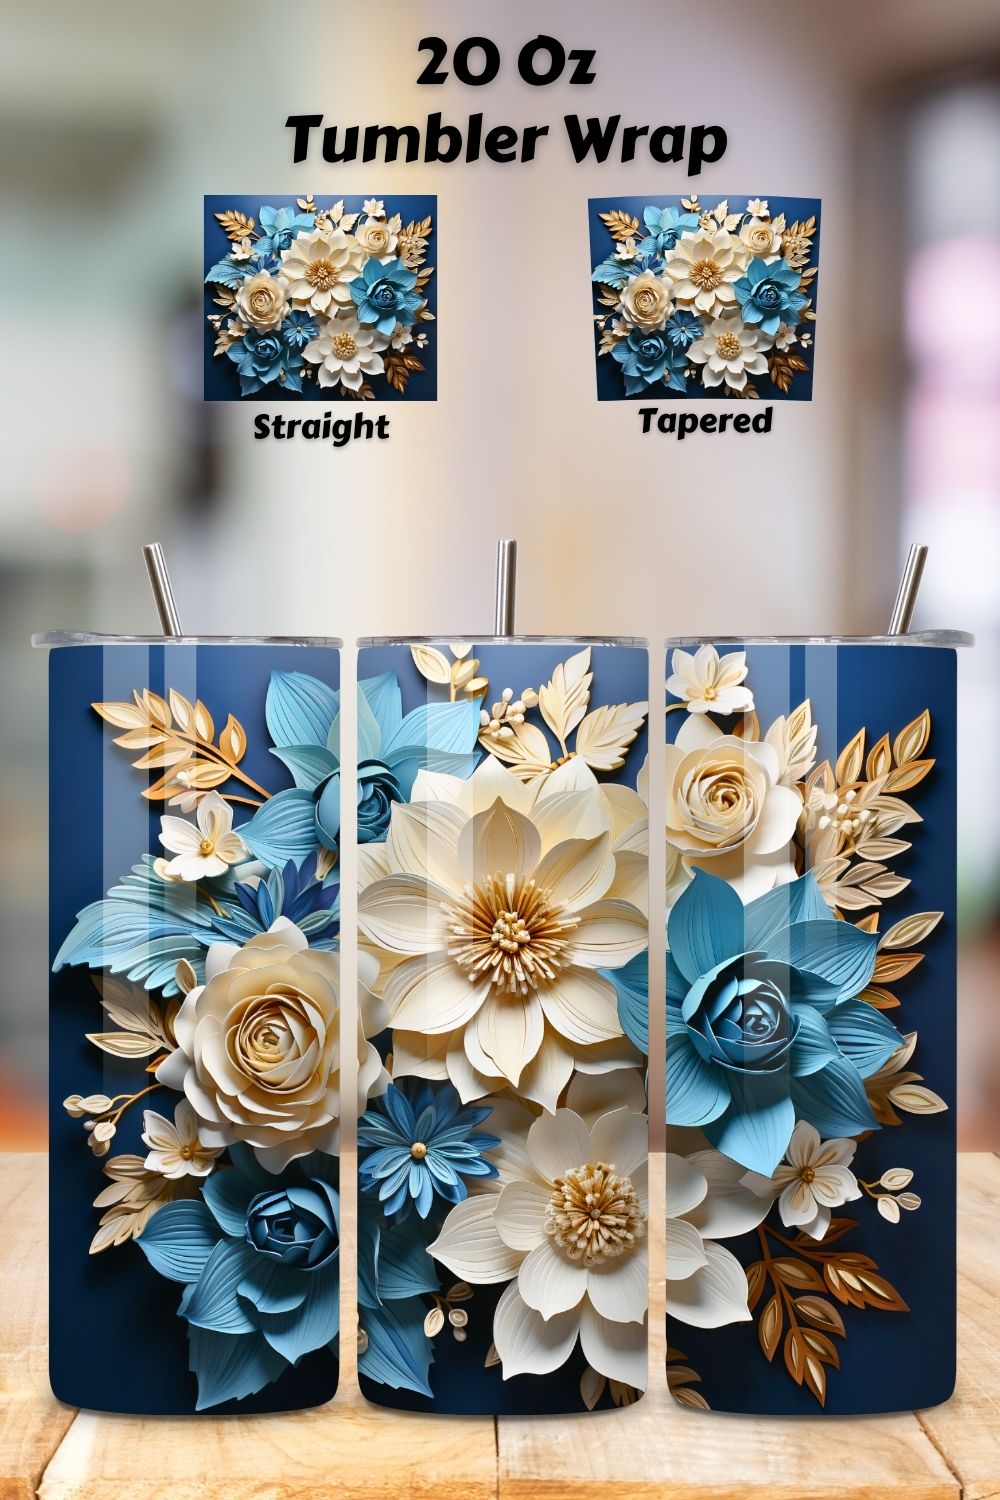 Spring Tumbler Wrap | 20 oz | Spring Print PNG | 3d Flowers, 3D Floral Tumbler Wrap, Sublimation Design, 20 oz Skinny Tumbler, Paper floral tumbler sublimation designs download, colorful pinterest preview image.